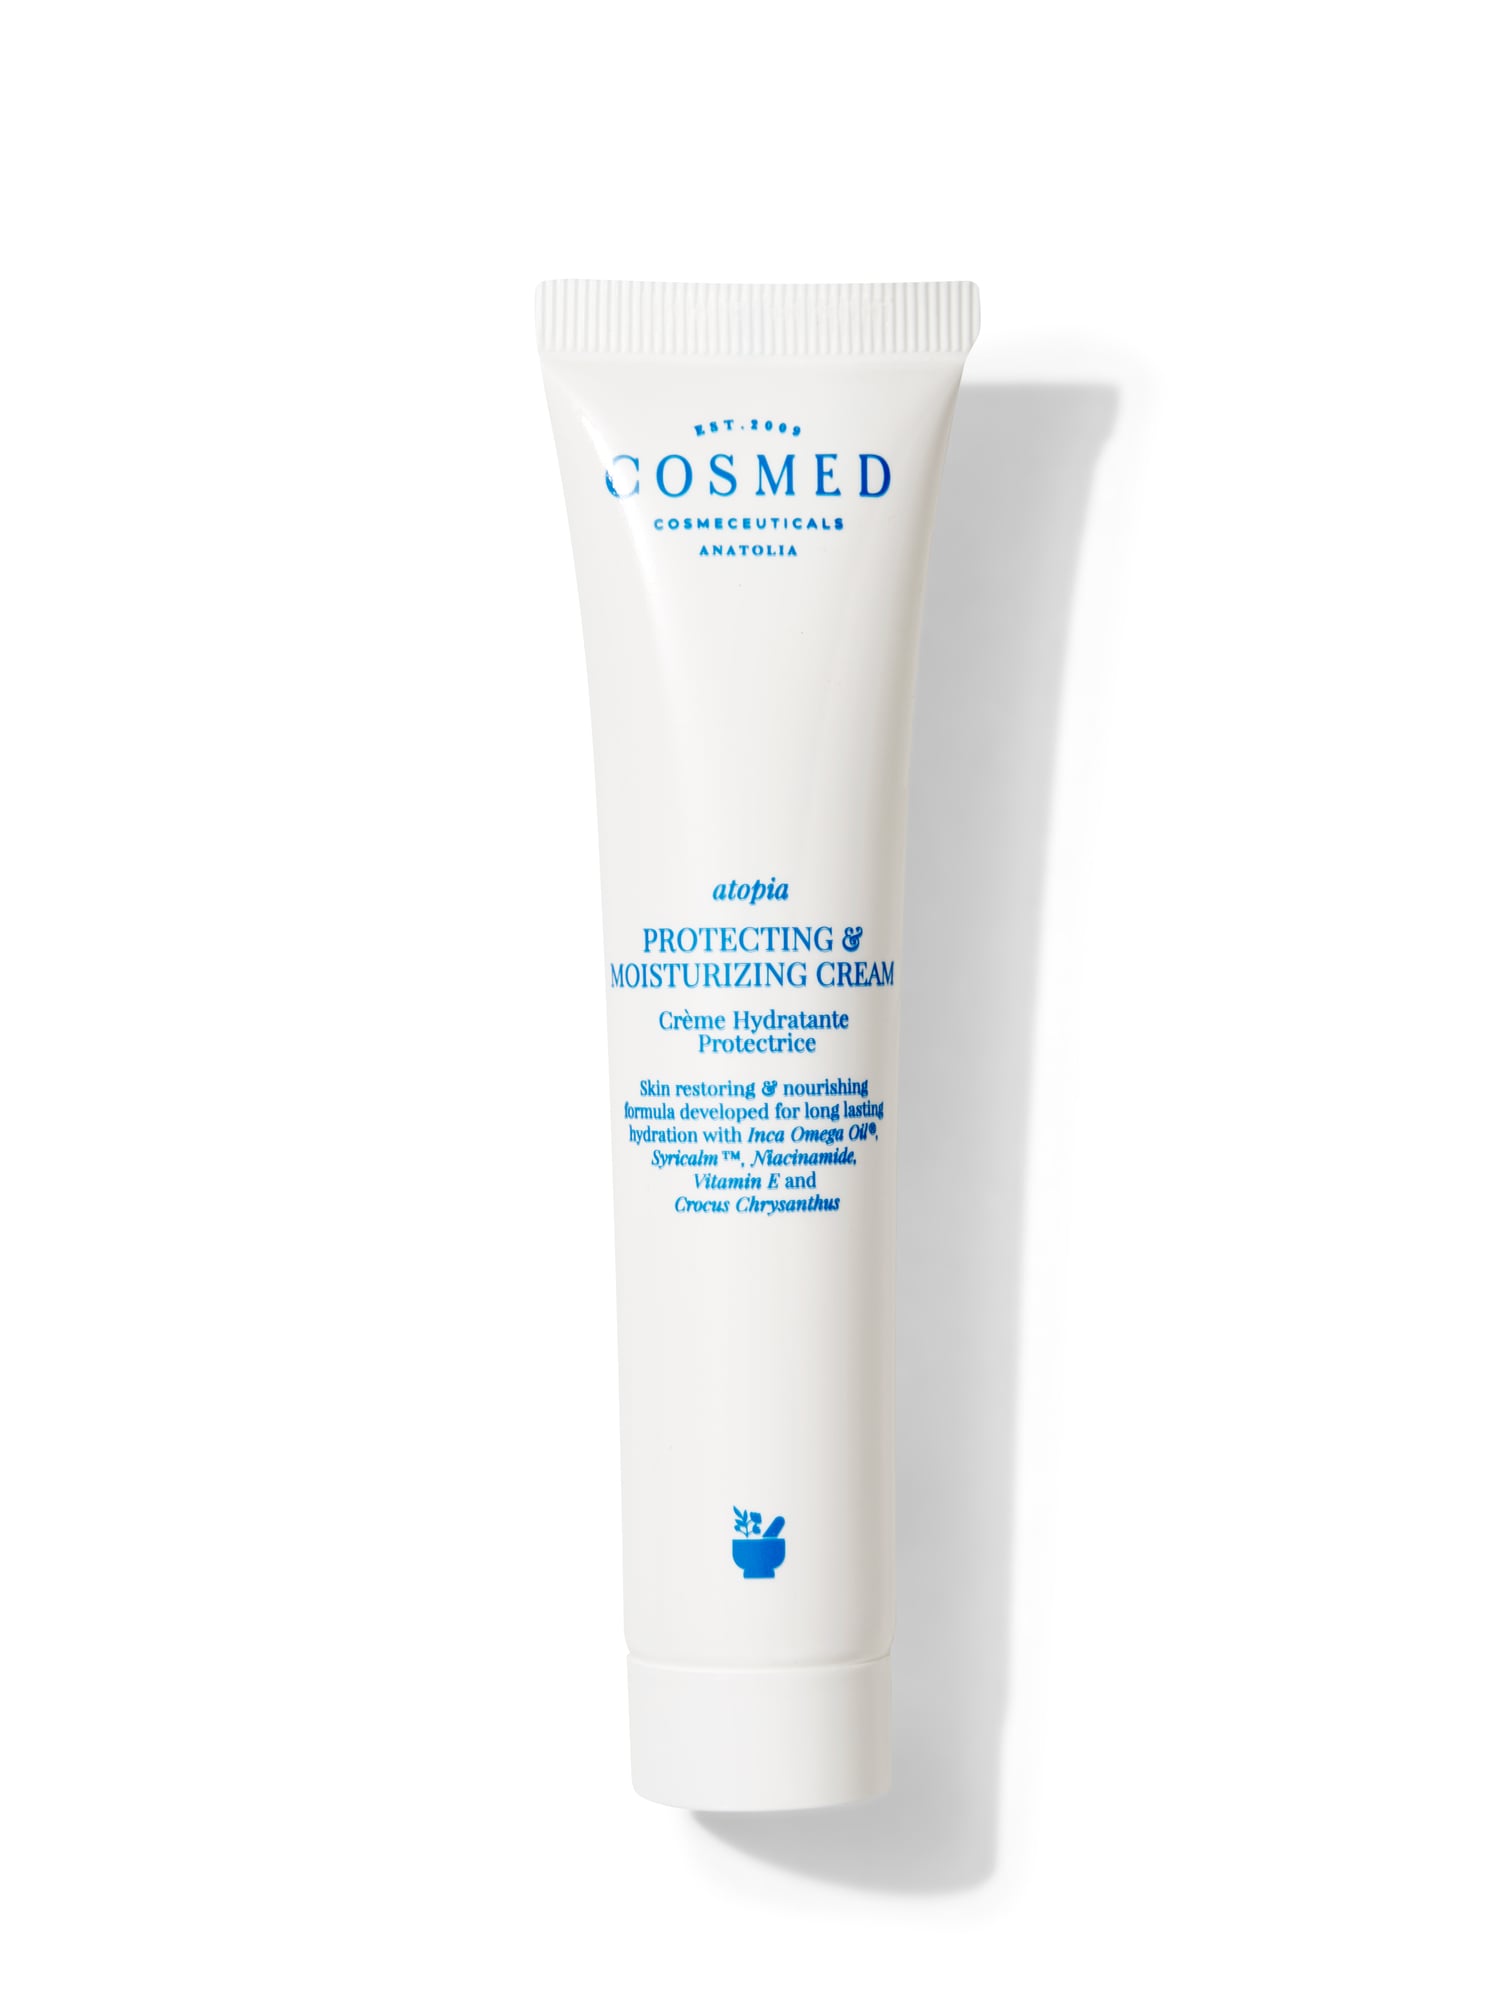 Protecting & Moisturizing Cream - Kuru, Çok Kuru ve Atopik Eğilimli Ciltler İçin Nemlendirici Yüz ve Vücut Bakım Kremi 40 ml